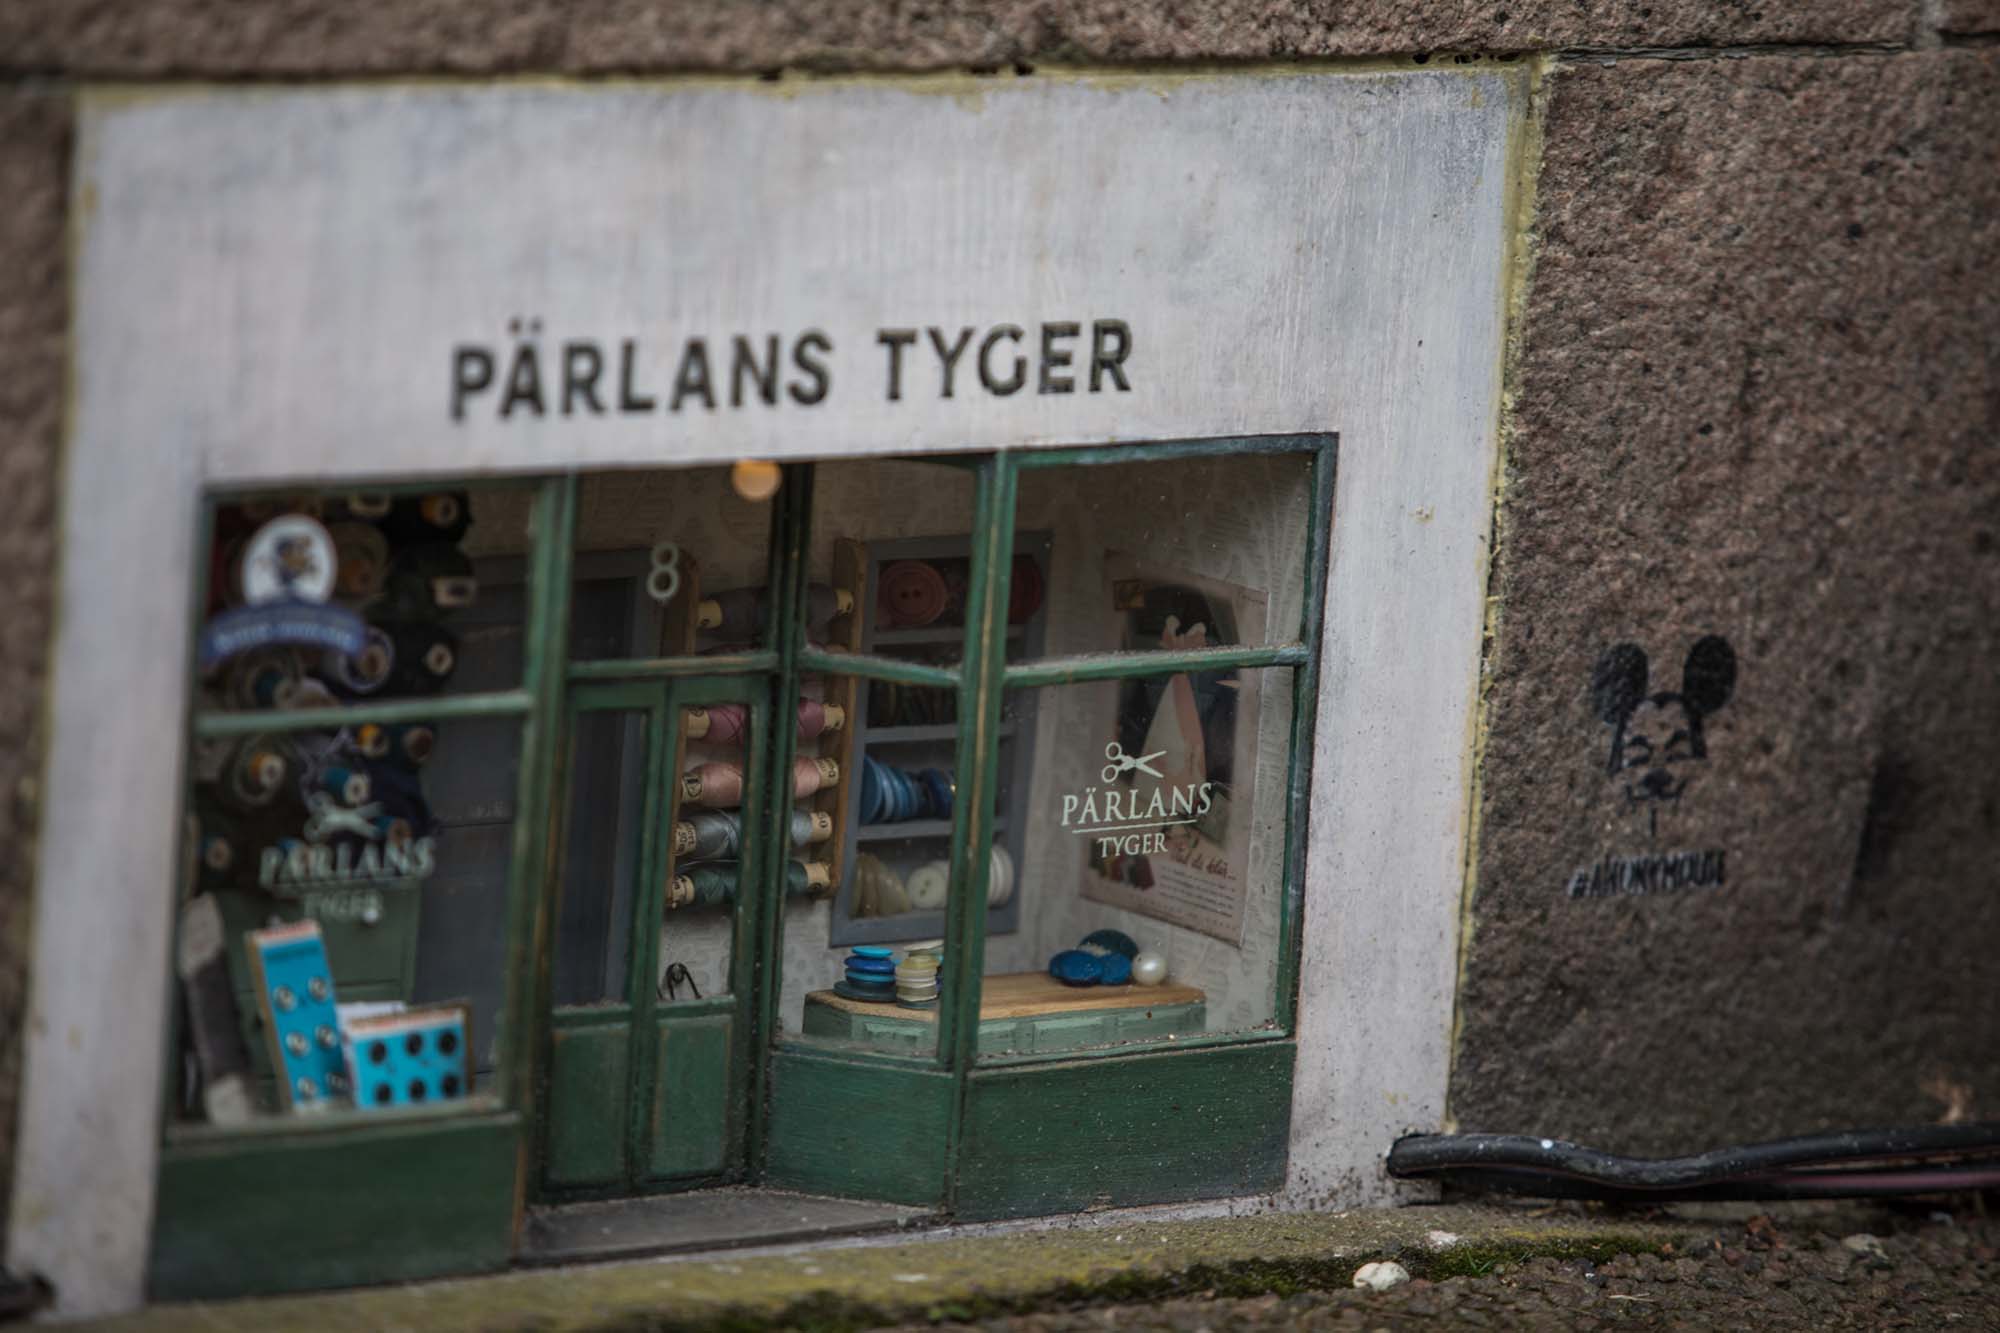 Miniature shop Parlans Tyger street art in Boras, Sweden